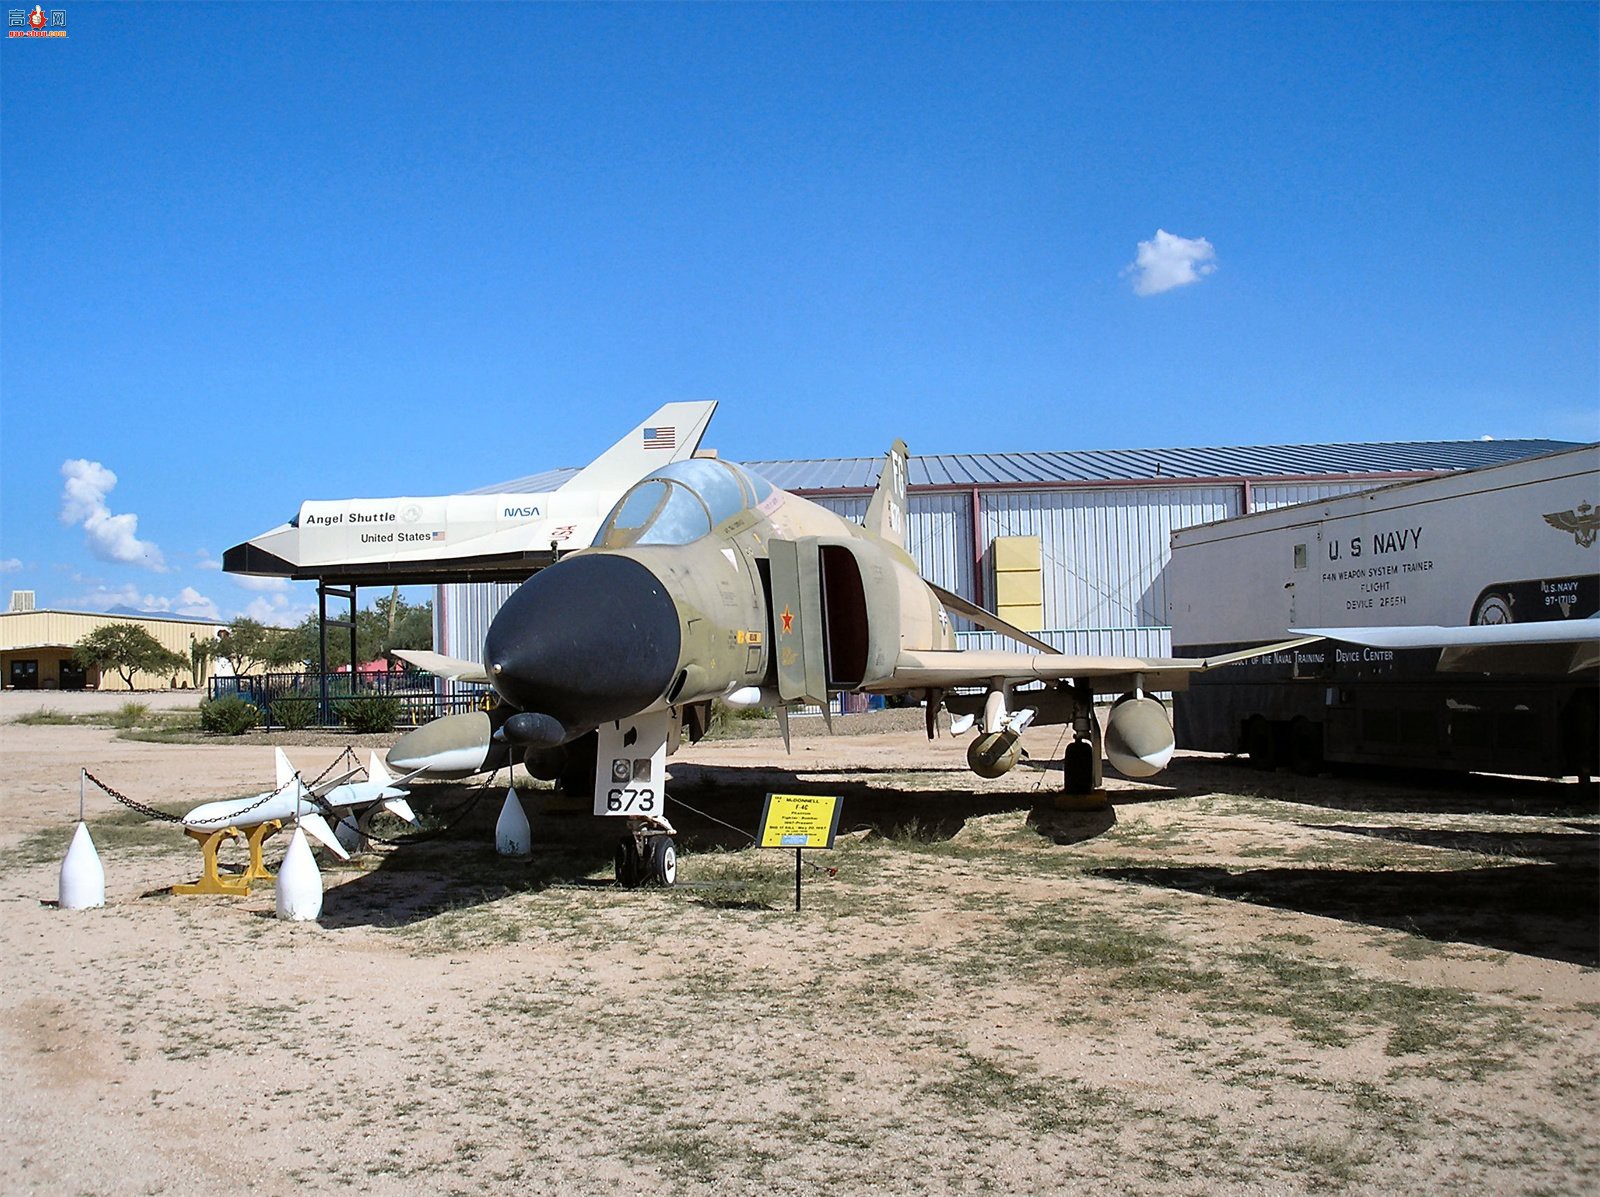  F-4C (64-0673) ӰII/II ս